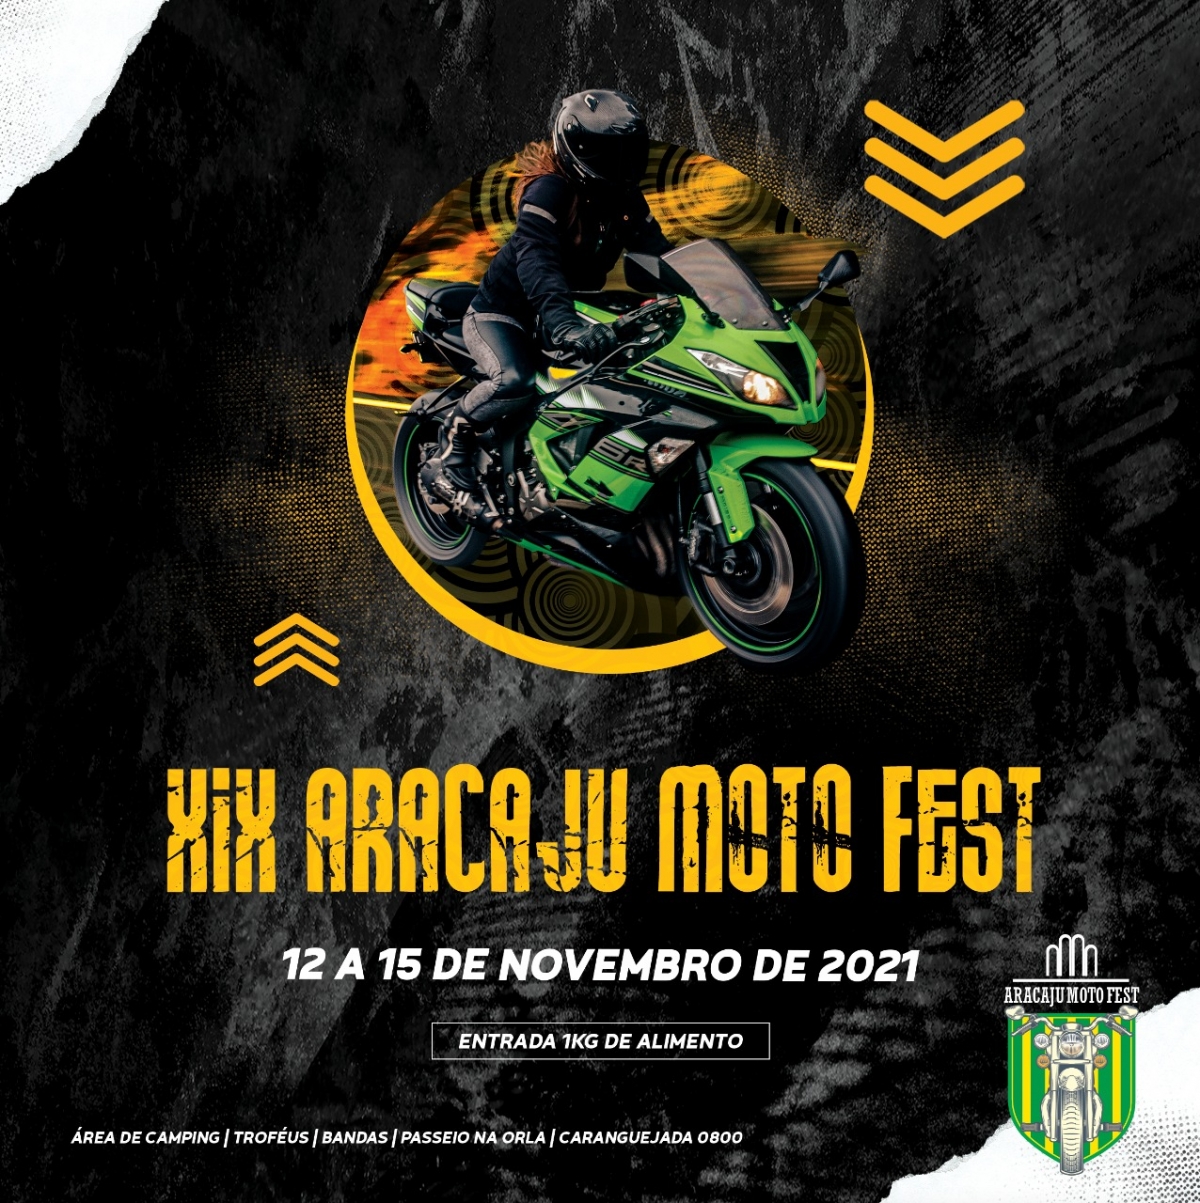 Aracaju Moto Fest será realizado de 12 a 15 de novembro (Imagem: Divulgação)